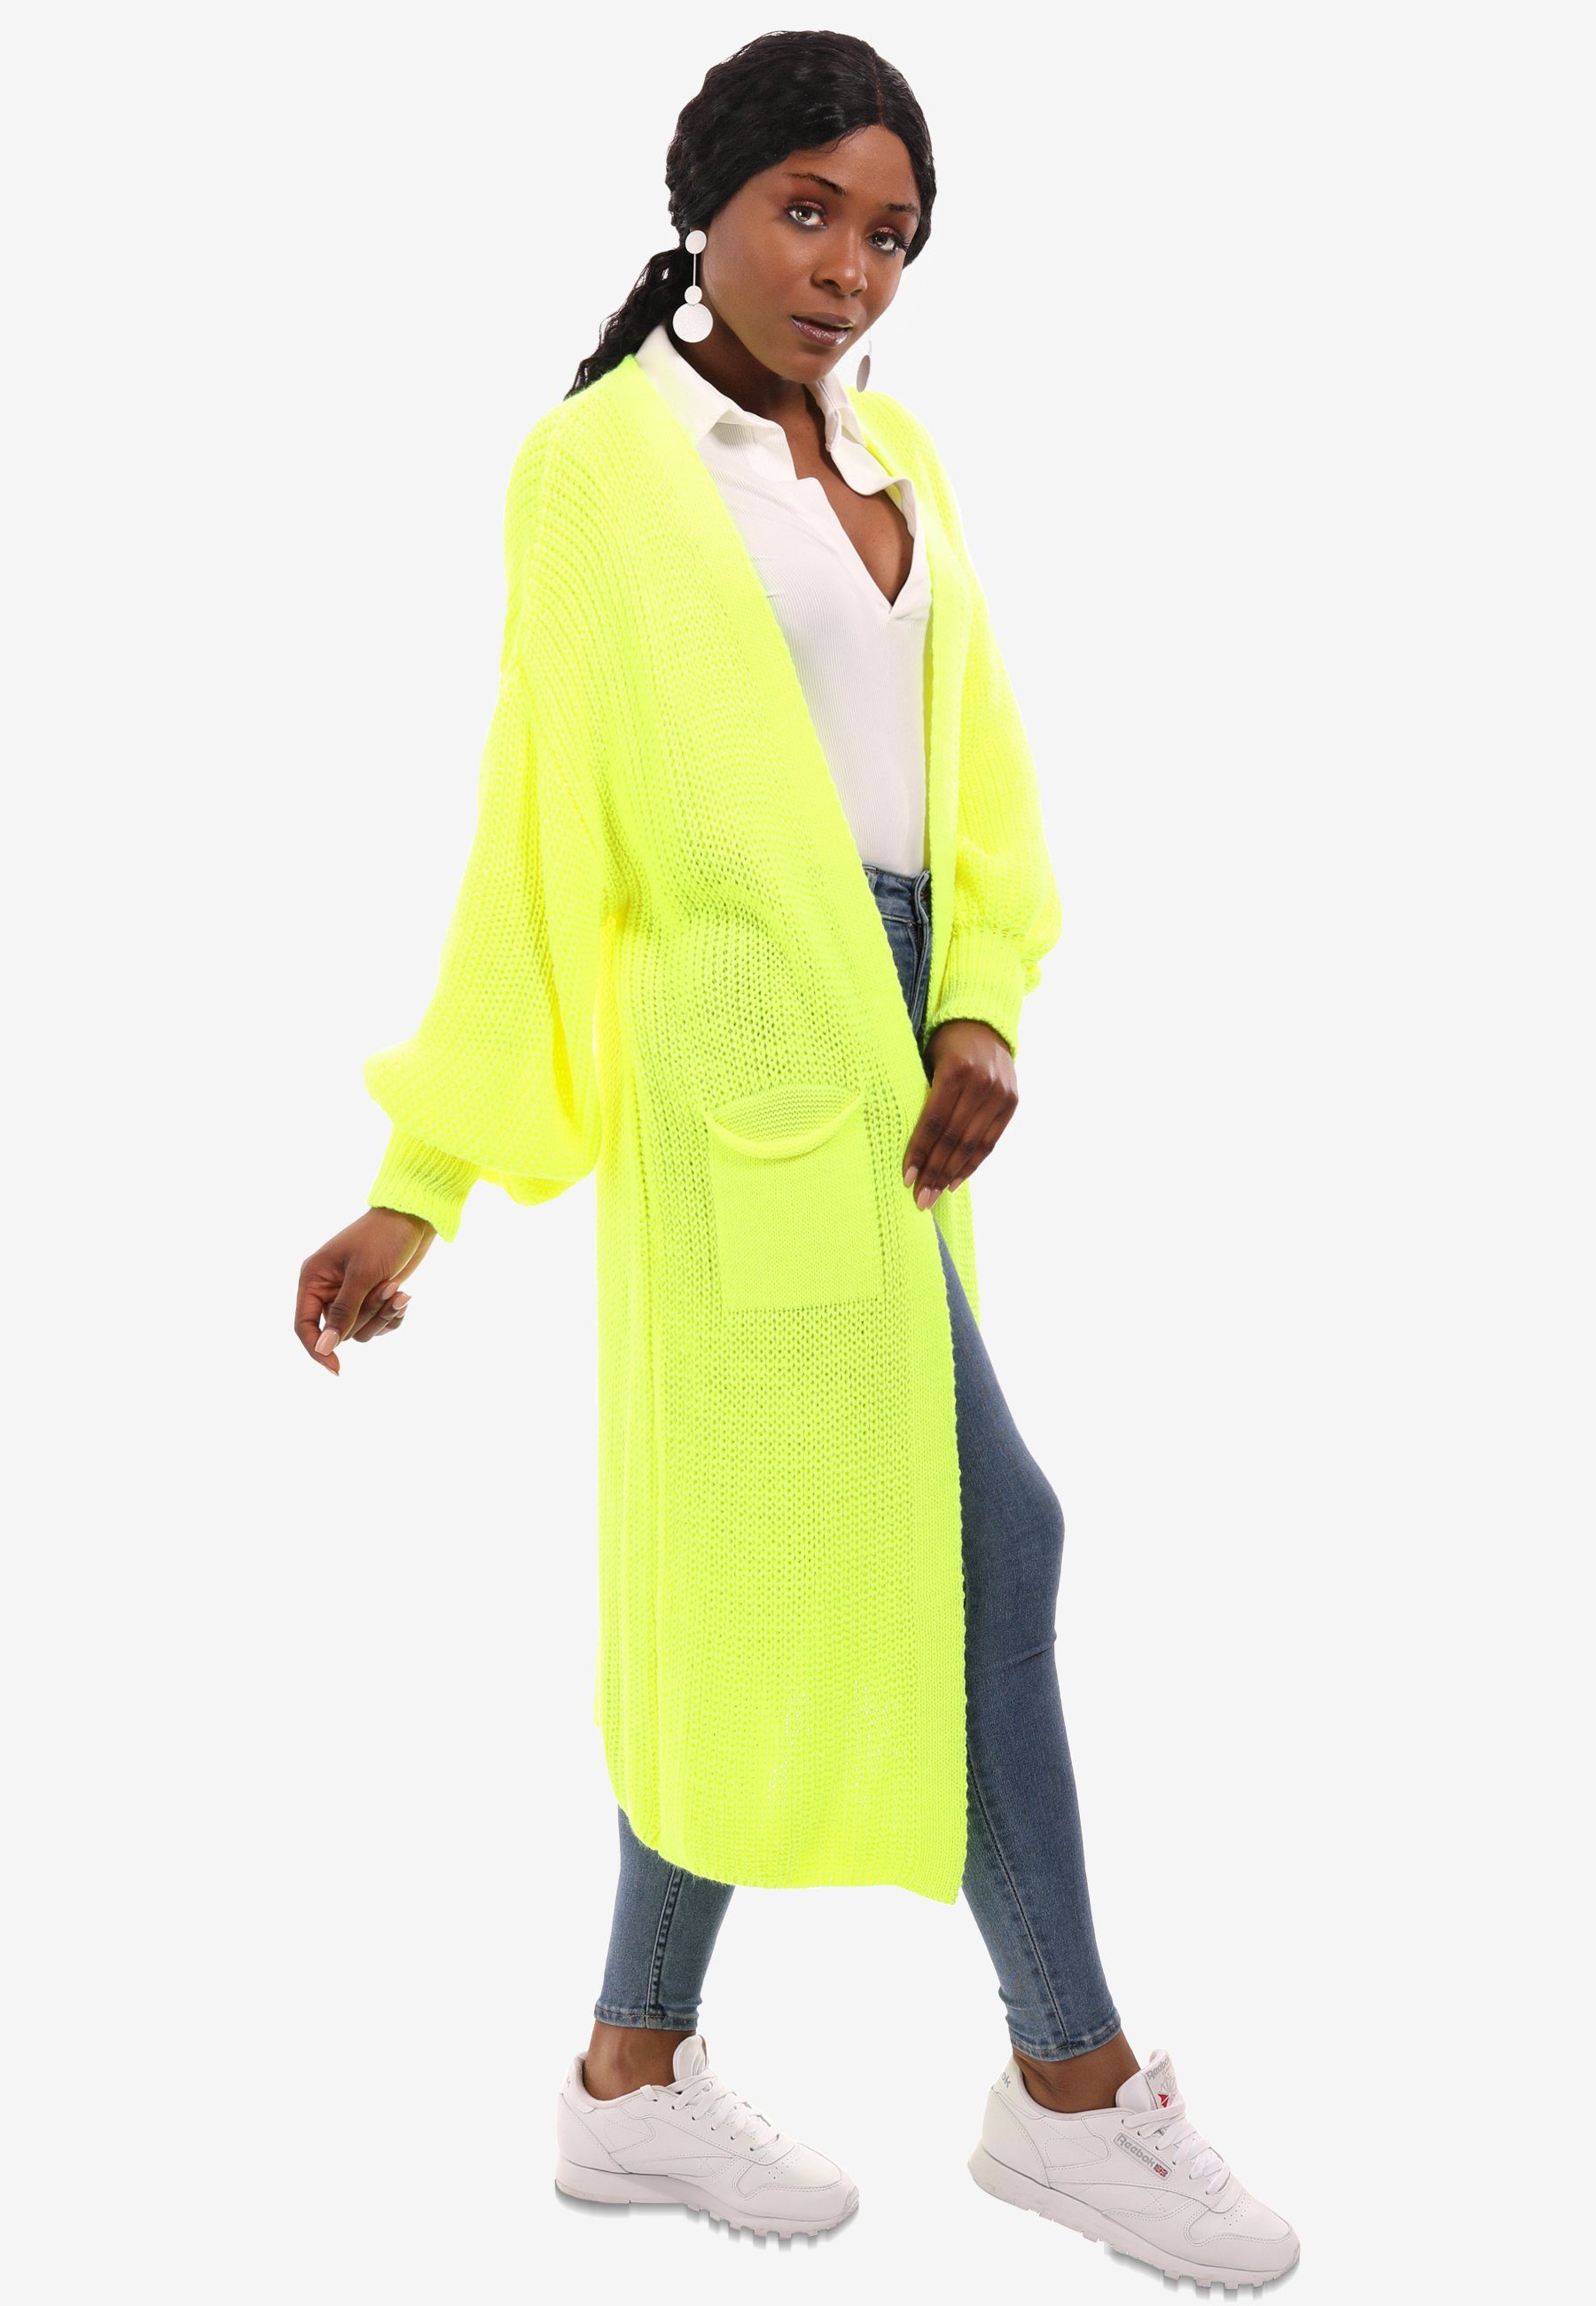 Style Verschlusslos neongelb Cardigan Cardigan YC Unifarbe, Basic aufgesetzten in Fashion Strickjacke & Taschen mit